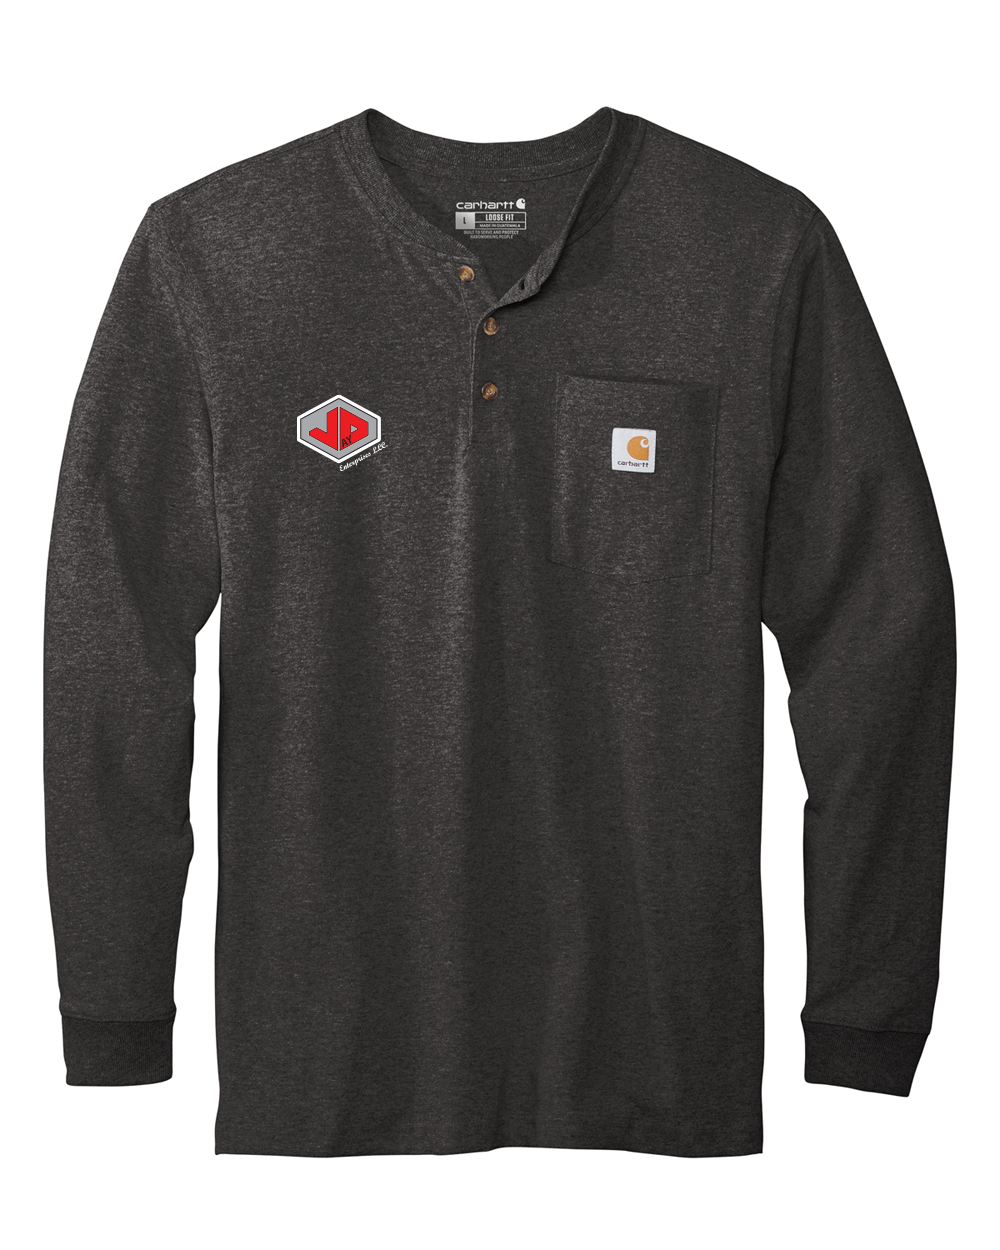 Jay D Enterprises - Carhartt Long Sleeve Henley T-Shirt